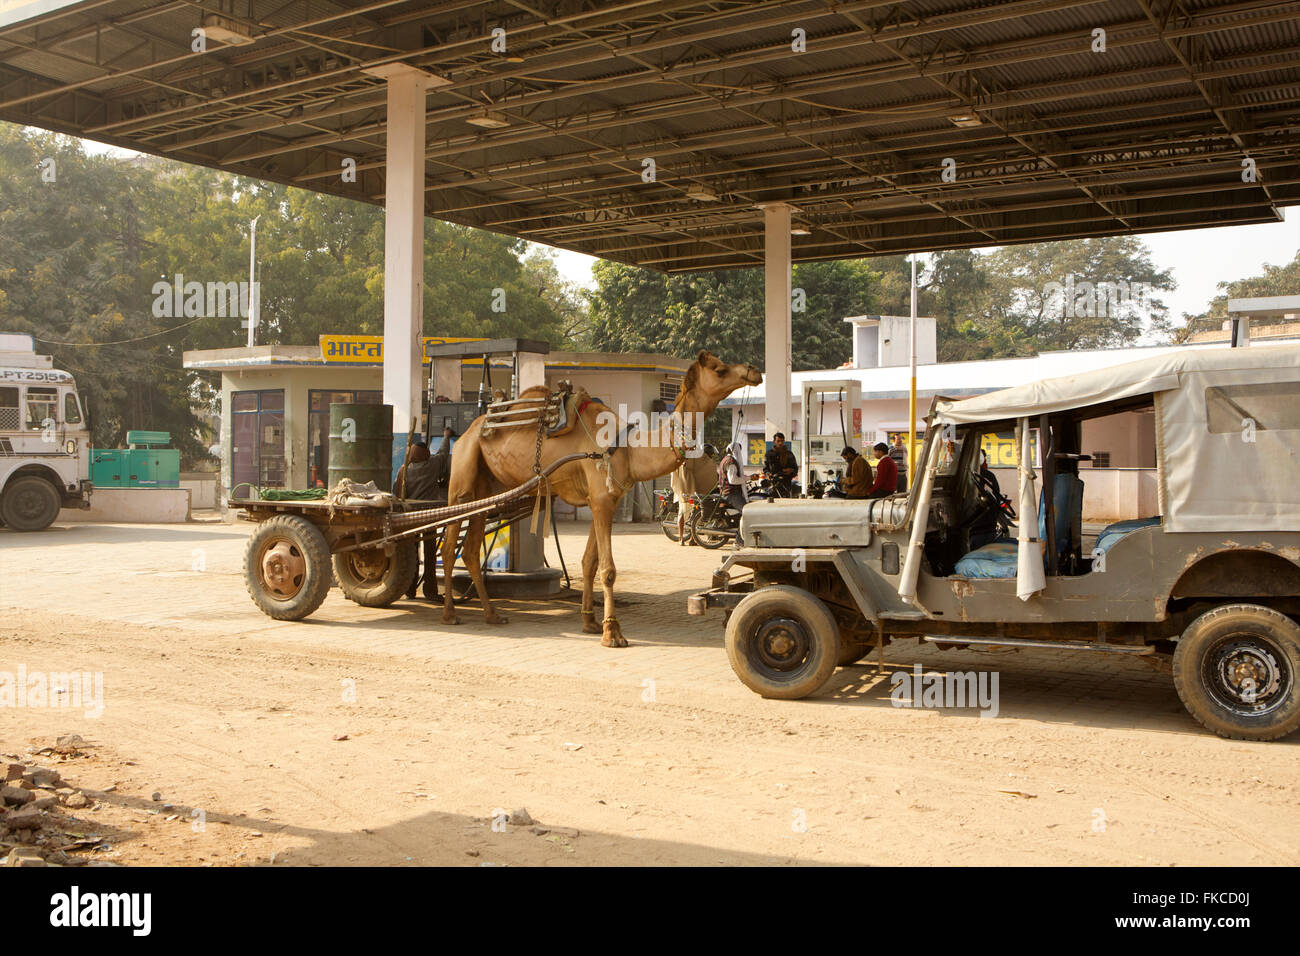 Camel drawn cart at a petrol station, India Stock Photo